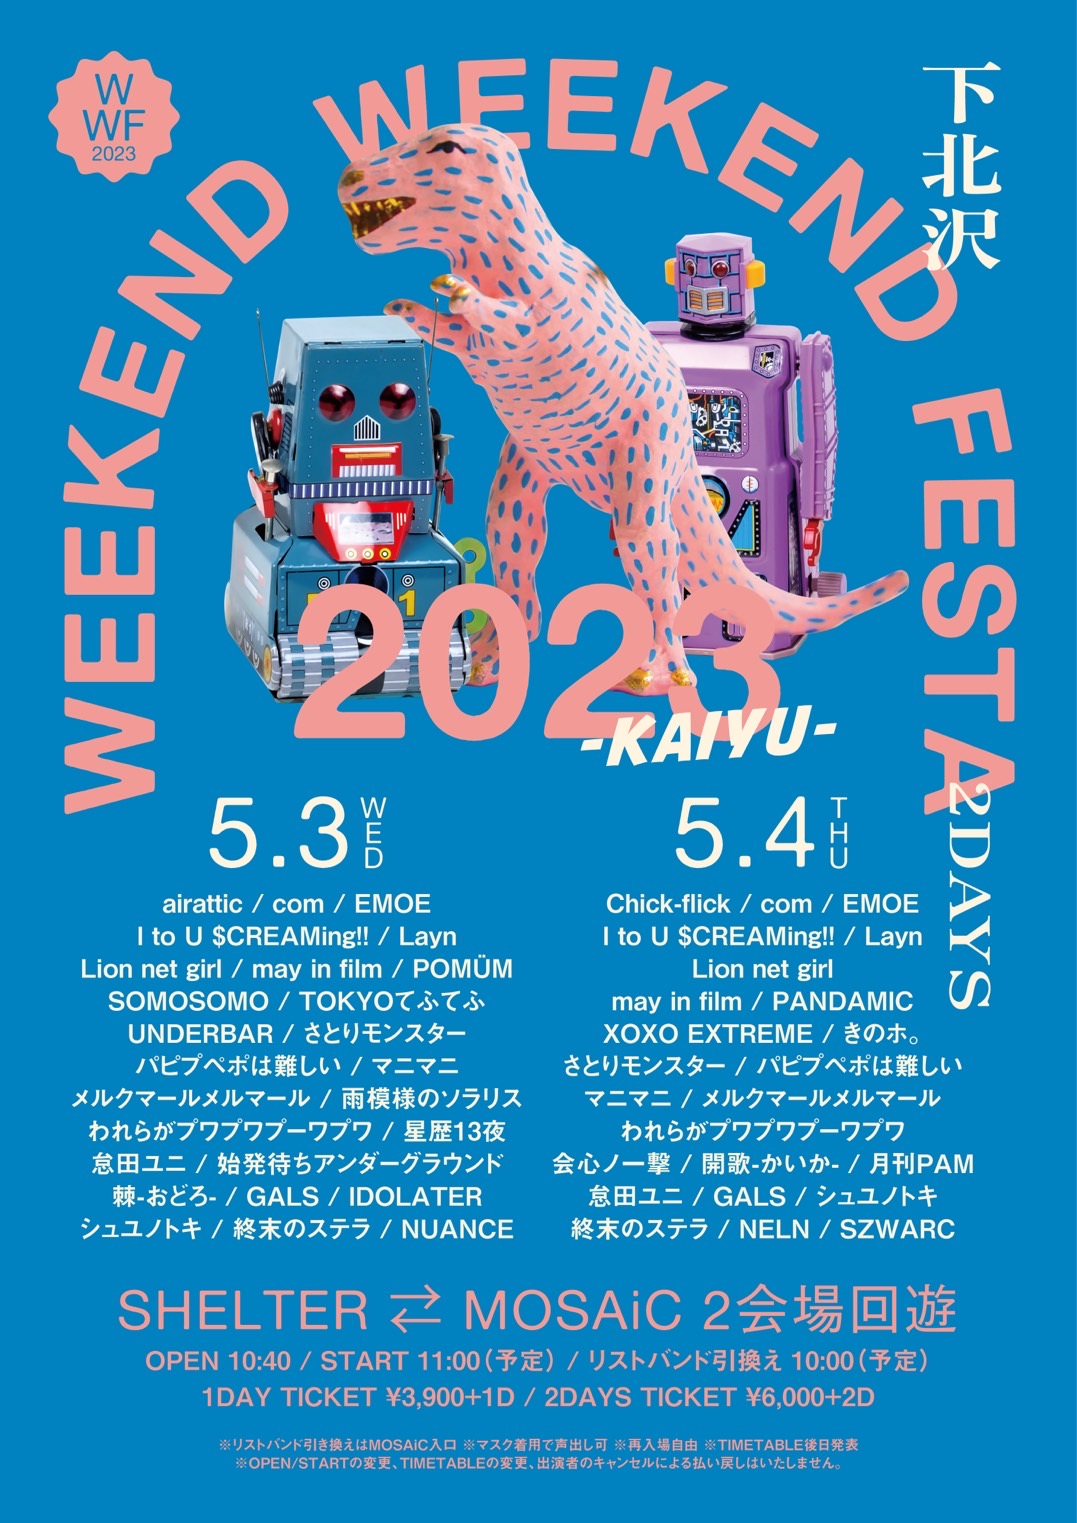 『weekend weekend festa 2023』  ~KAIYU〜